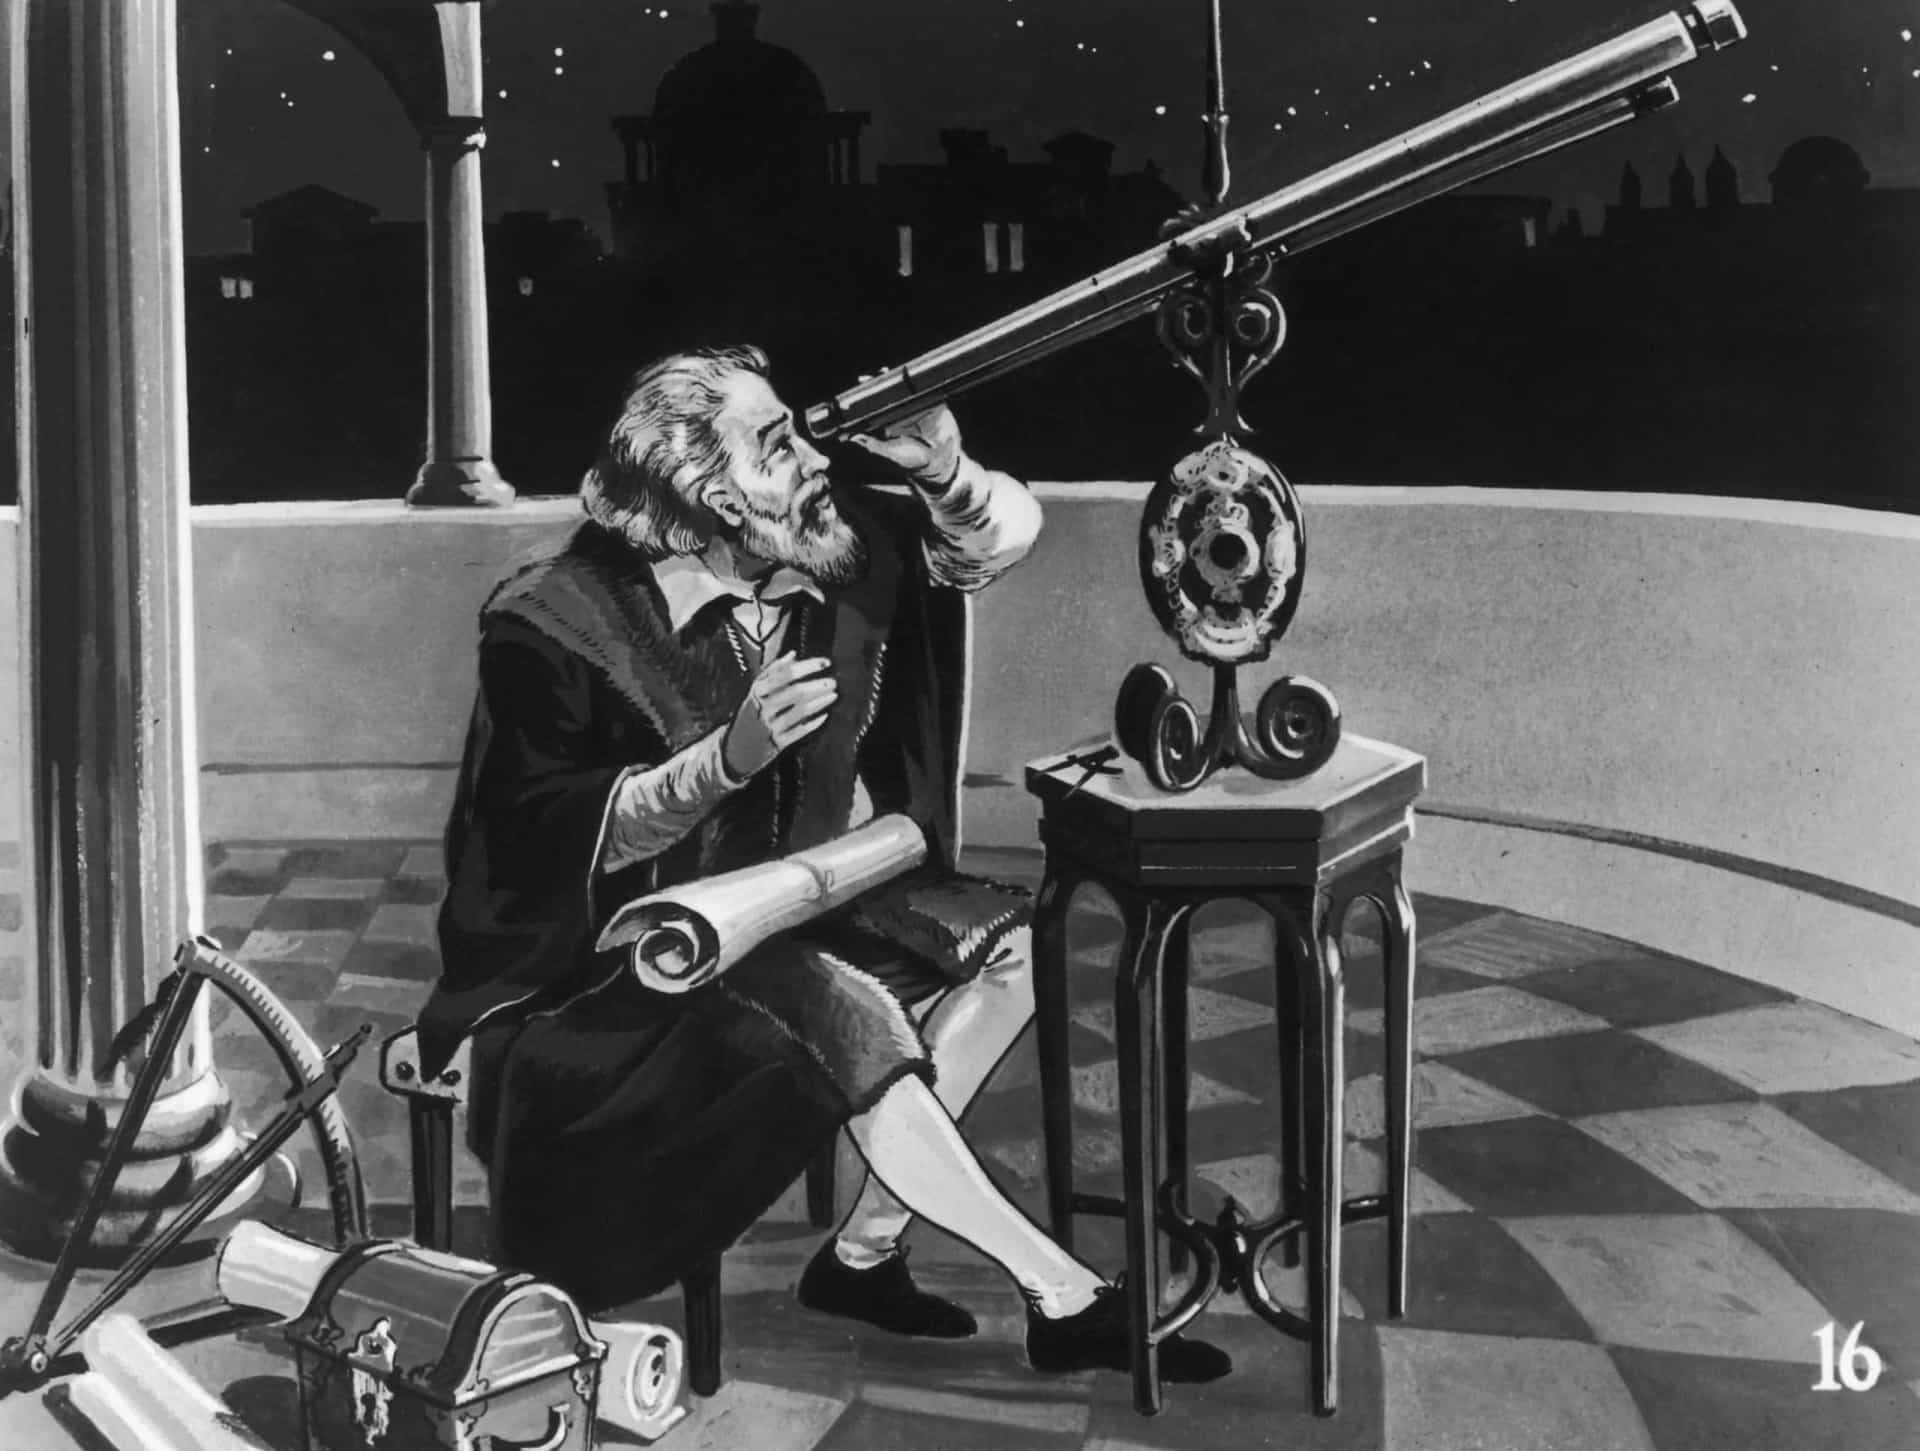 <p>L'une de ses inventions les plus célèbres et les plus influentes est le télescope. Son premier modèle, mis au point en 1609, ne pouvait grossir que jusqu'à une puissance de trois et n'était donc pas incroyablement utile pour l'observation stellaire. Finalement, il est parvenu à grossir jusqu'à la puissance 30, ce qui lui a permis de découvrir quatre des lunes de Jupiter, l'existence de la Voie lactée et les cratères de la lune.</p><p>Tu pourrais aussi aimer:<a href="https://www.starsinsider.com/n/326588?utm_source=msn.com&utm_medium=display&utm_campaign=referral_description&utm_content=592698fr-be"> Astérix et Obélix: ce que vous ignoriez des irréductibles Gaulois</a></p>